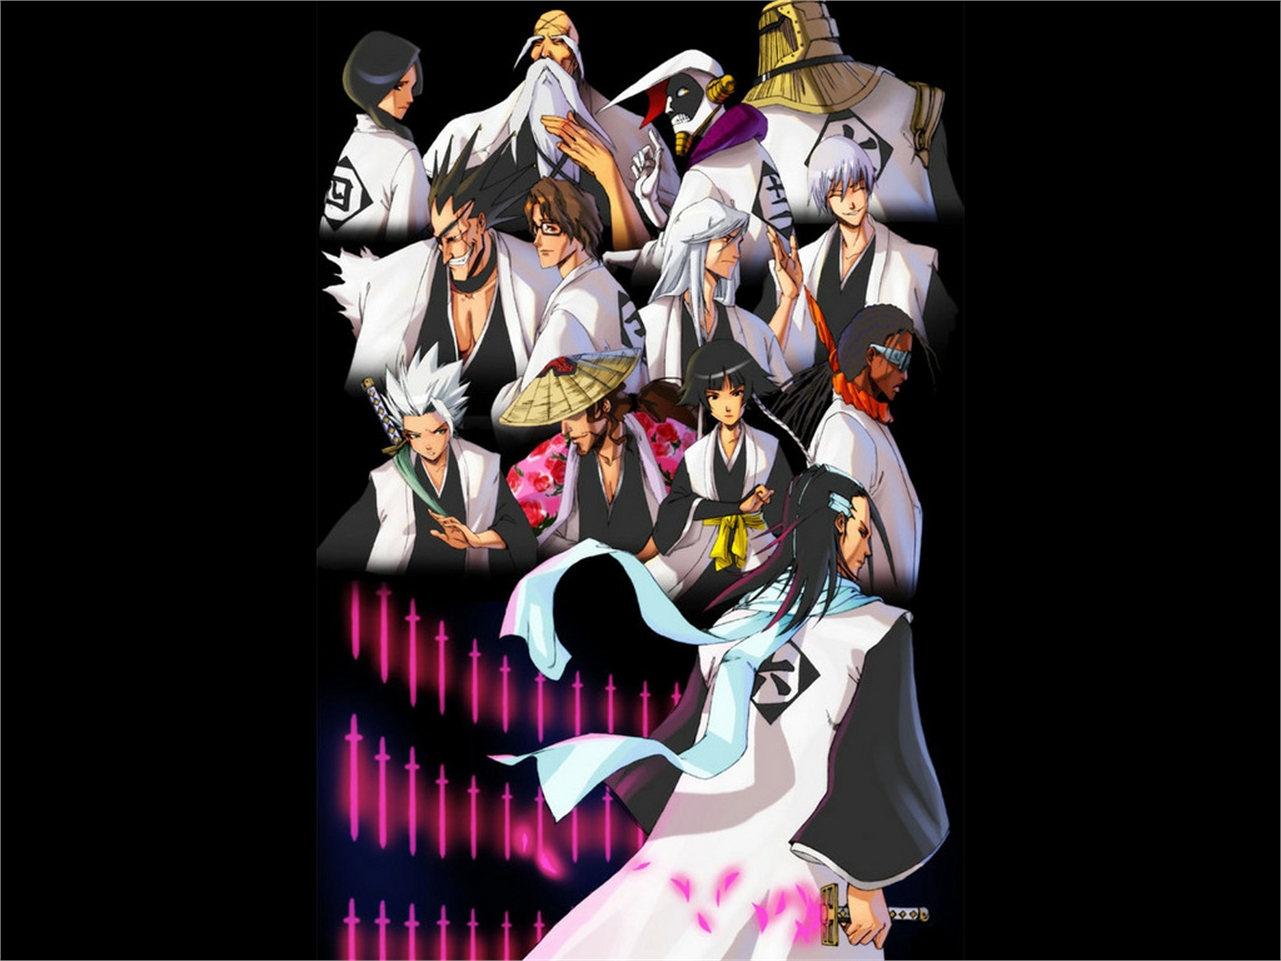 Free download wallpaper Anime, Bleach, Byakuya Kuchiki, Kenpachi Zaraki, Jūshirō Ukitake, Shunsui Kyōraku, Tōshirō Hitsugaya, Soifon (Bleach), Genryūsai Shigekuni Yamamoto, Sōsuke Aizen, Gin Ichimaru, Kaname Tosen, Mayuri Kurotsuchi, Sajin Komamura, Unohana Retsu on your PC desktop